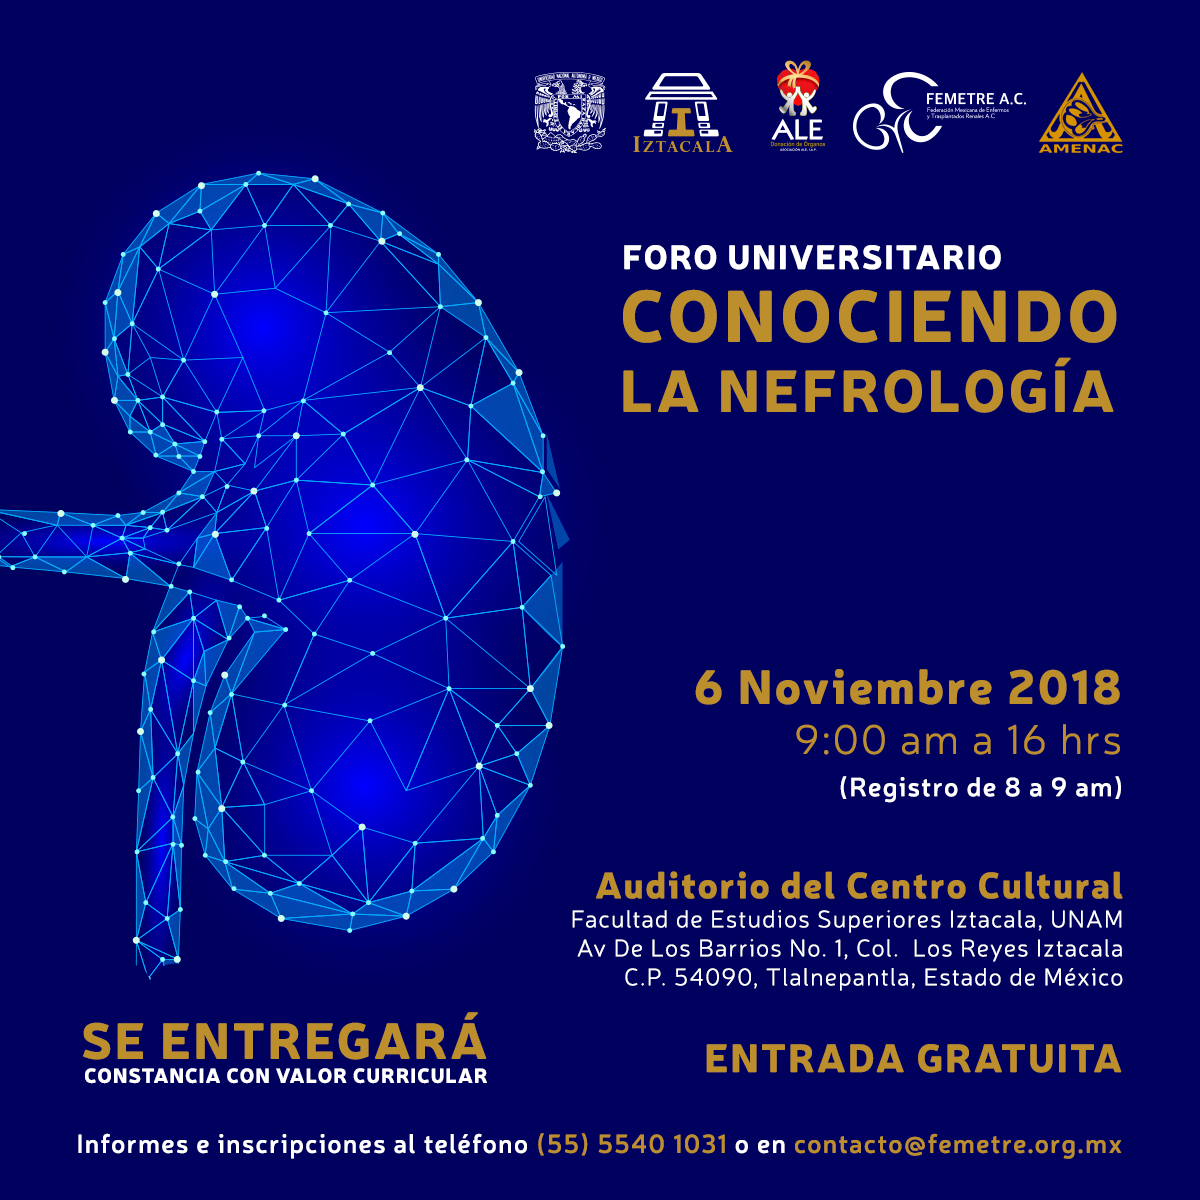 1er. Foro Universitario “Conociendo la Neurología” martes 06 de noviembre de 2018